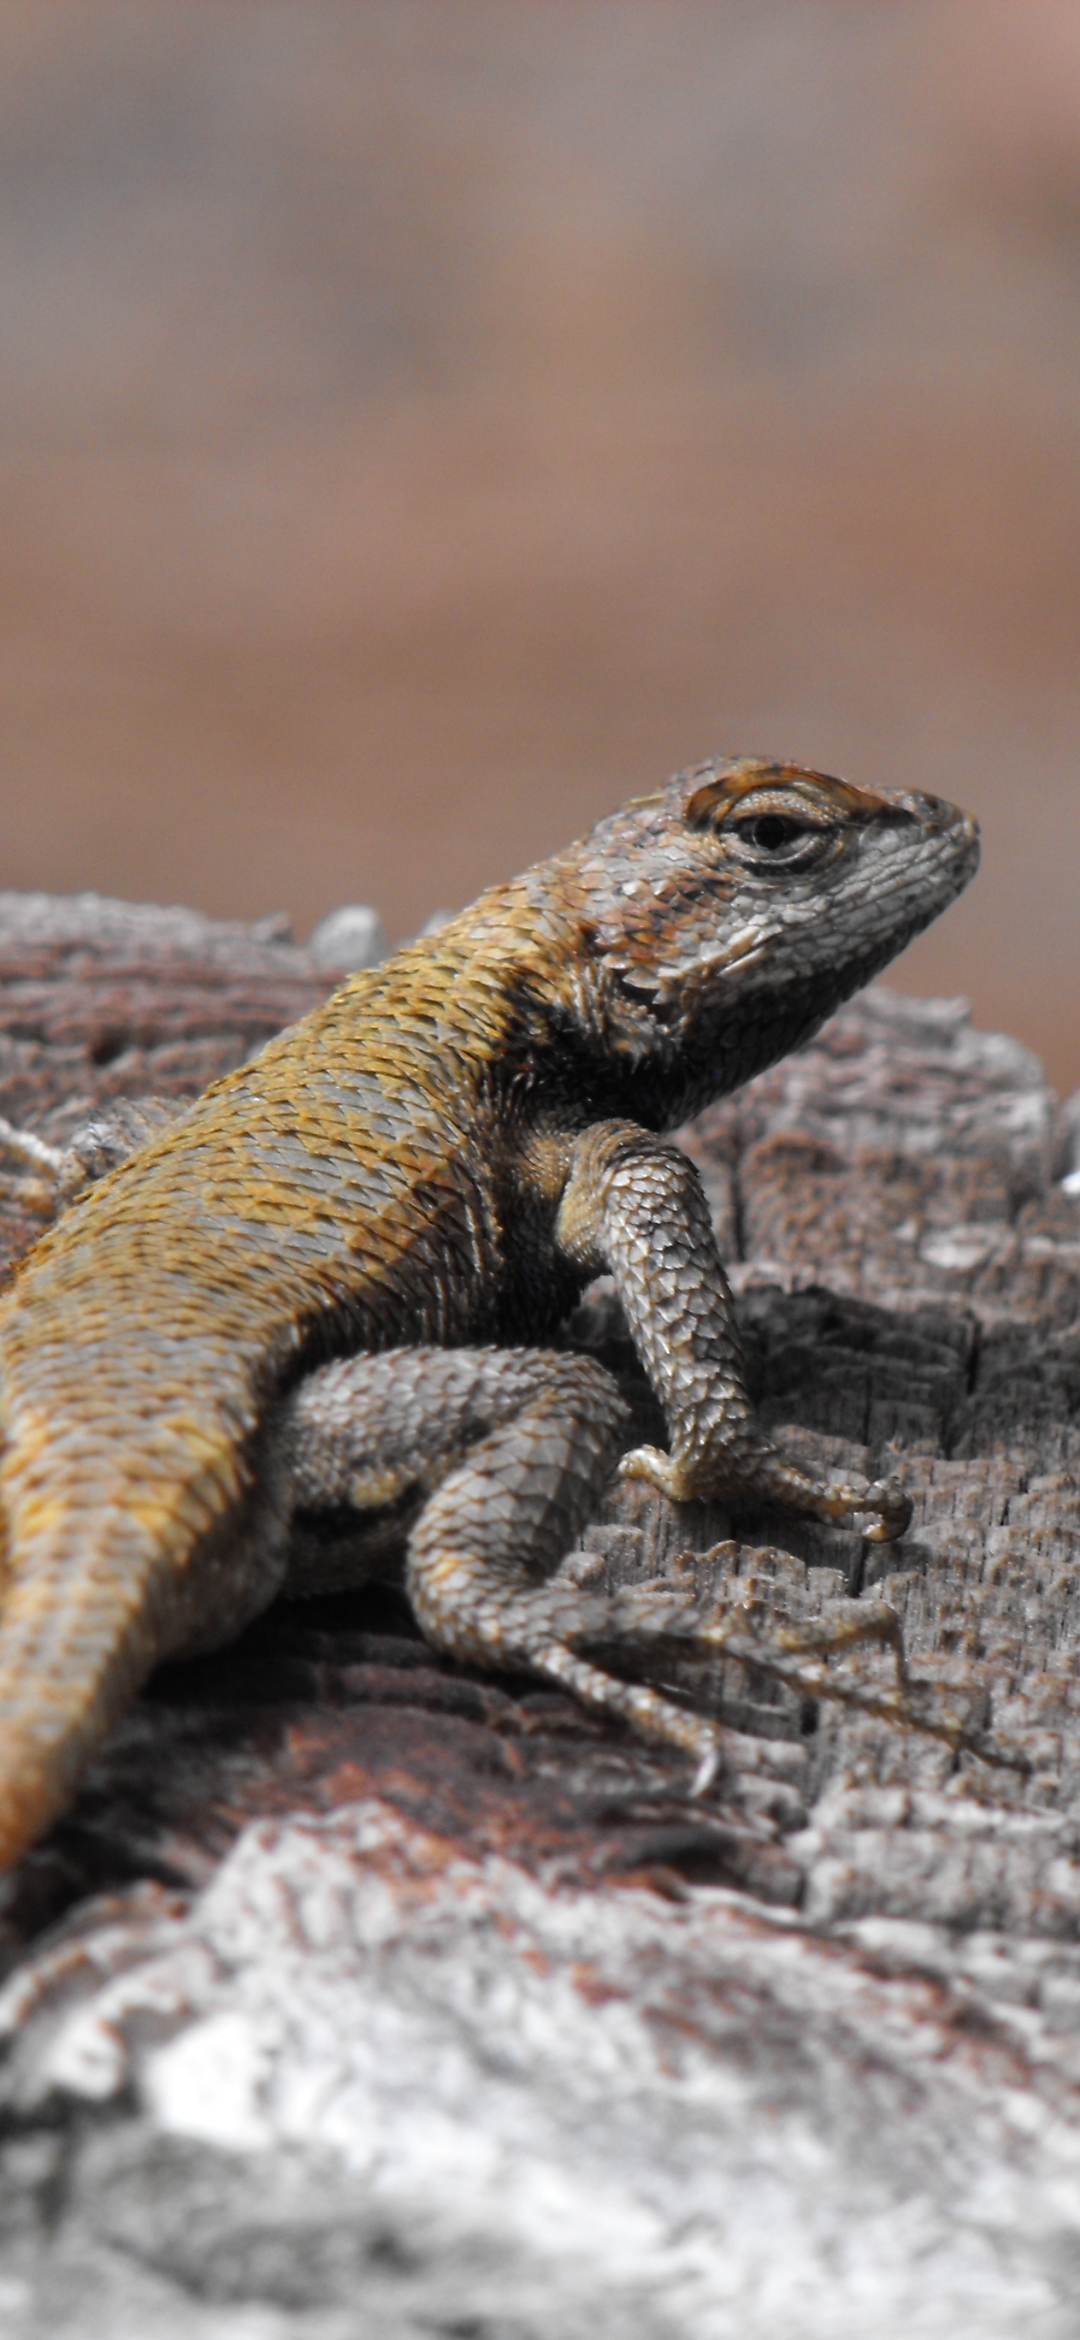 Download mobile wallpaper Animal, Lizard, Reptile, Reptiles for free.